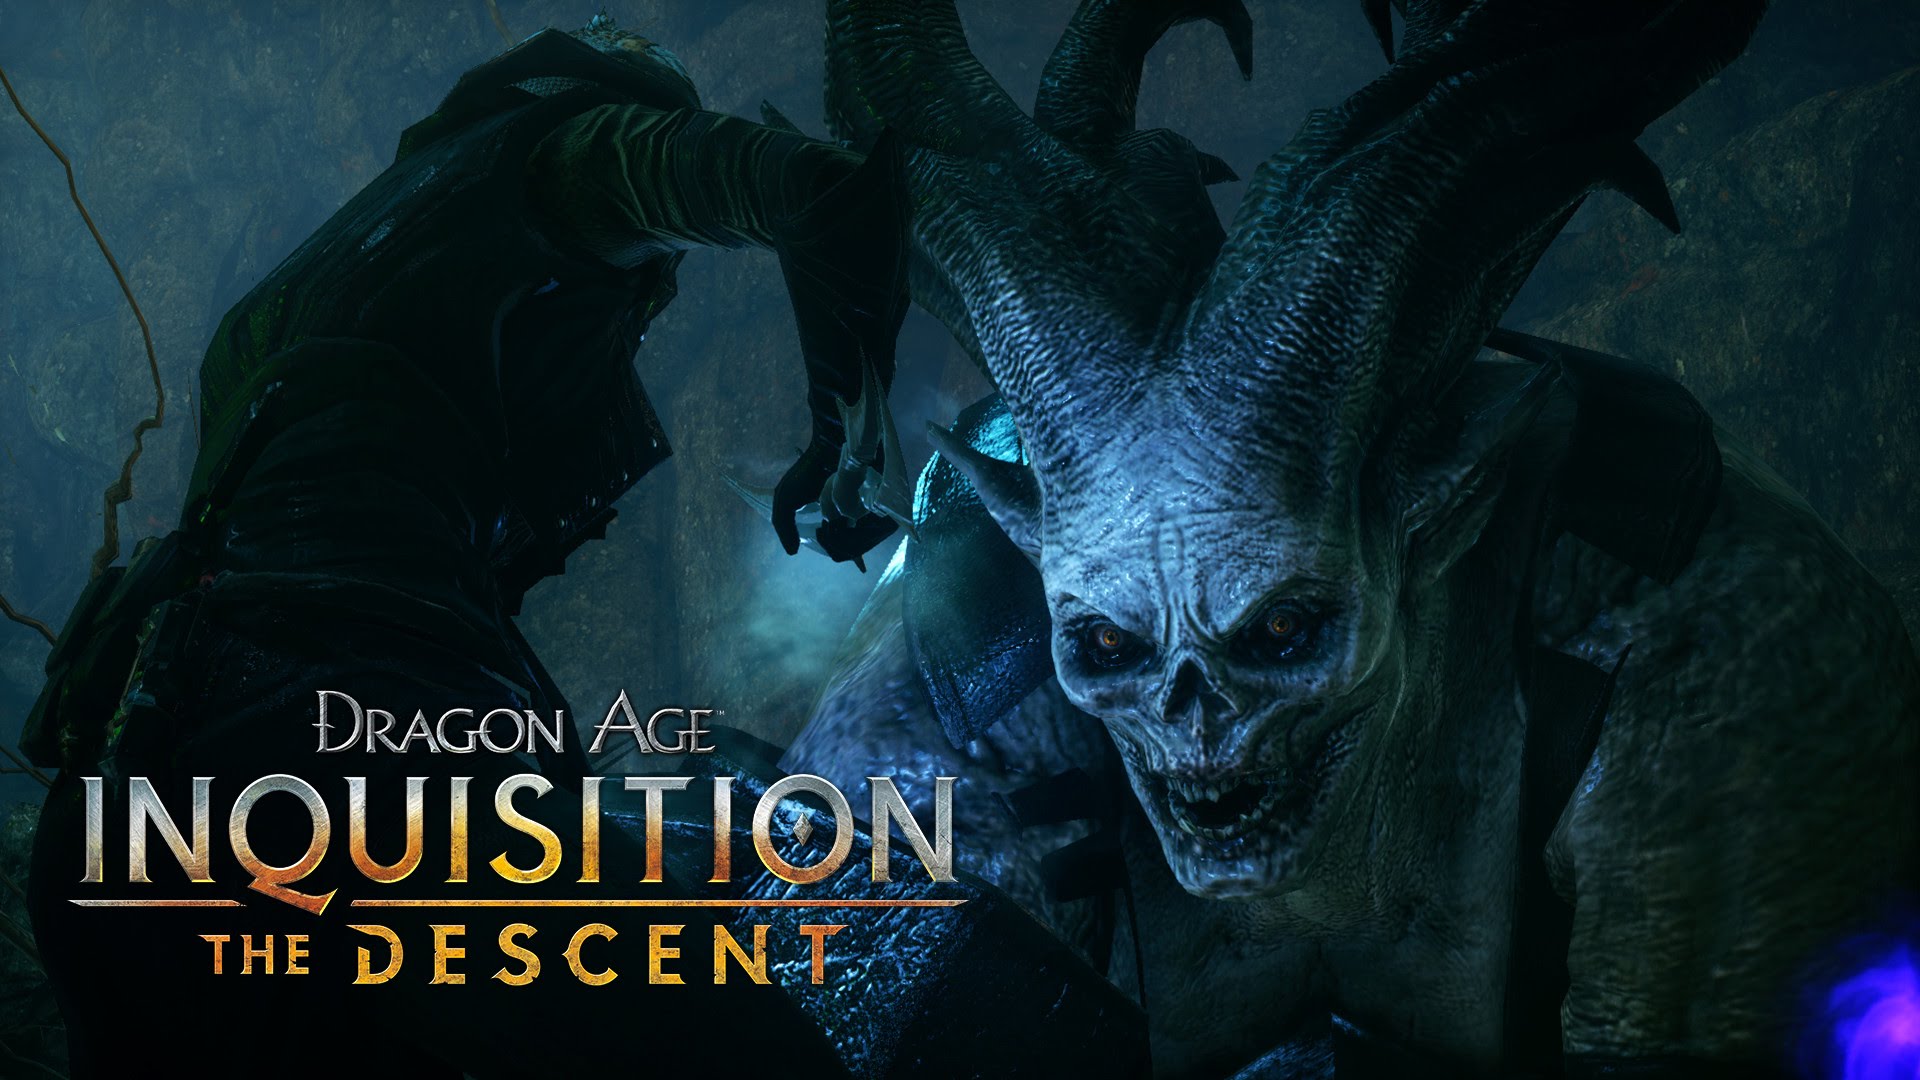 DRAGON AGE™: INQUISITION Official Trailer – The Descent (DLC)